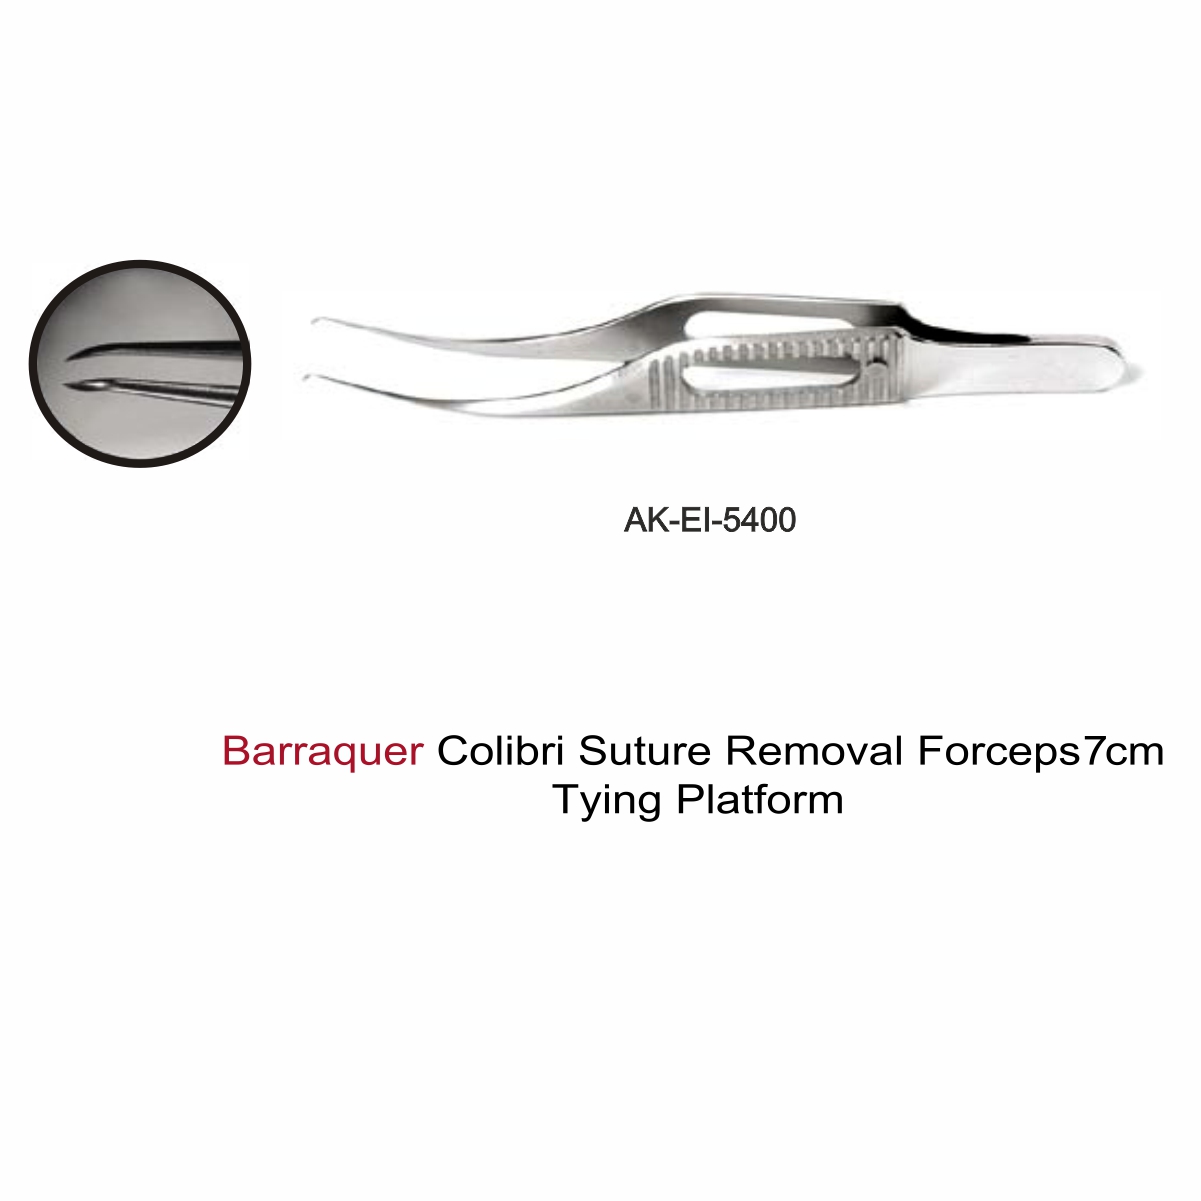 Barraquer Colibri Suture Removal Forceps